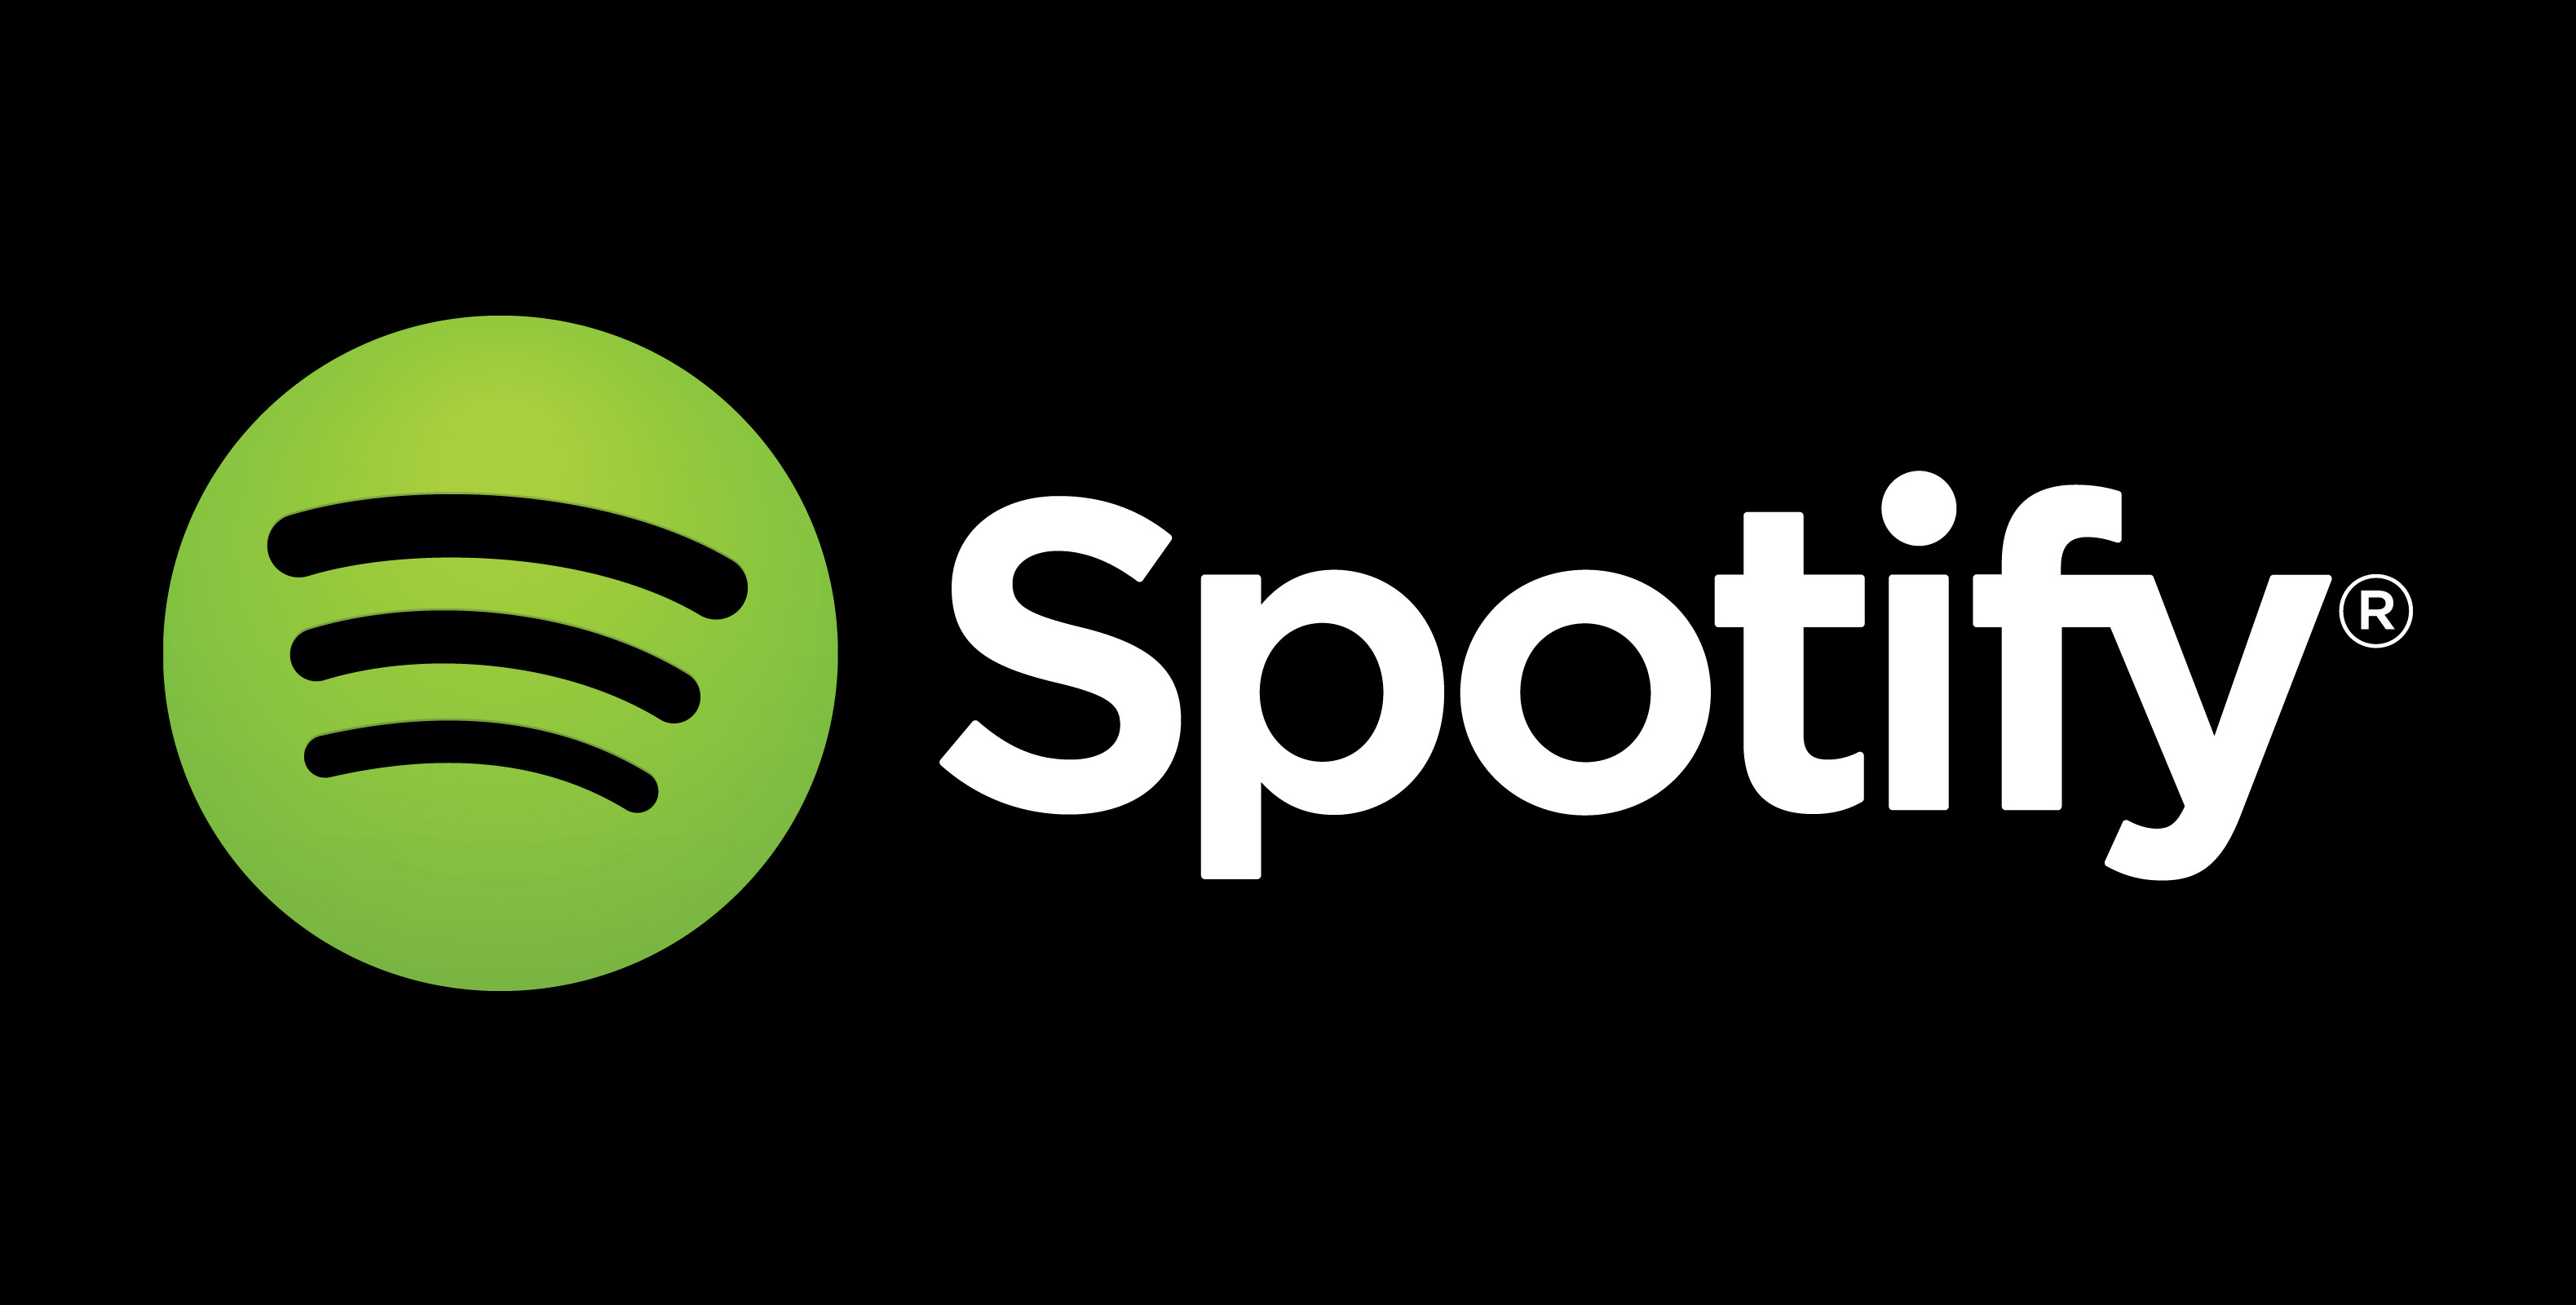 Spotifyの招待コードが届いた！使い方や機能・曲をプレイリストやお気に入りに登録する方法